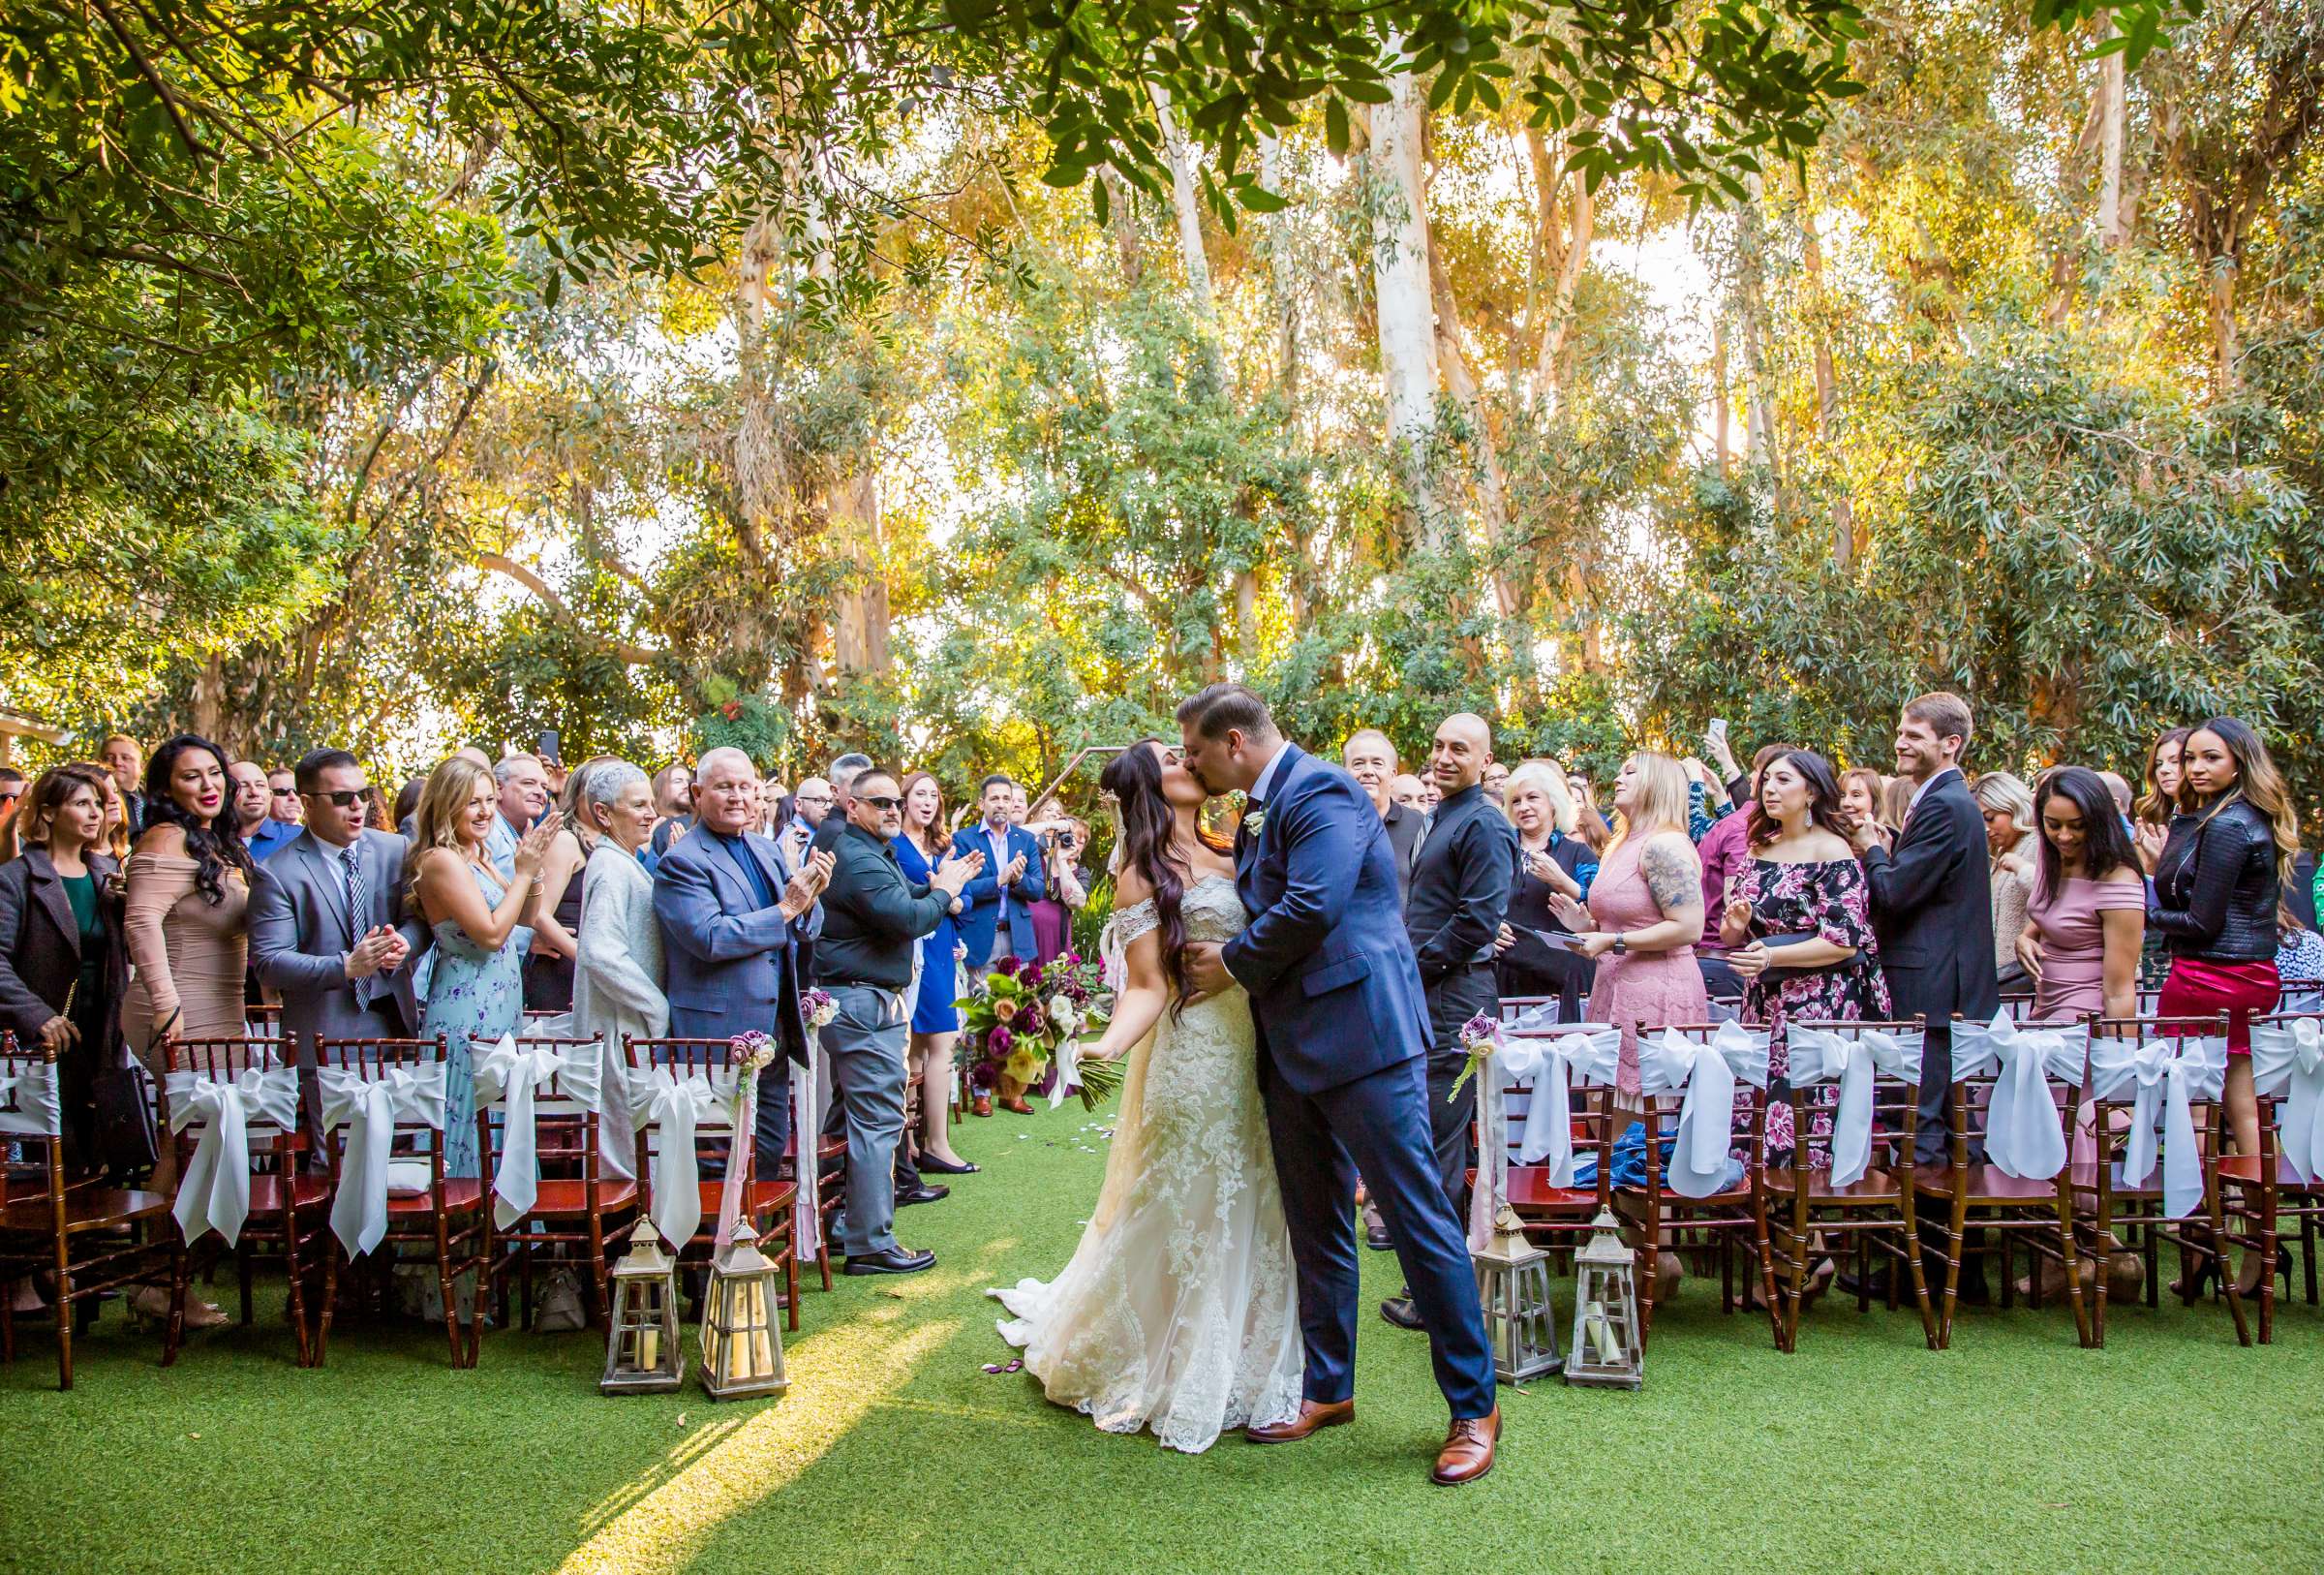 Twin Oaks House & Gardens Wedding Estate Wedding, Stephanie and Ilija Wedding Photo #81 by True Photography